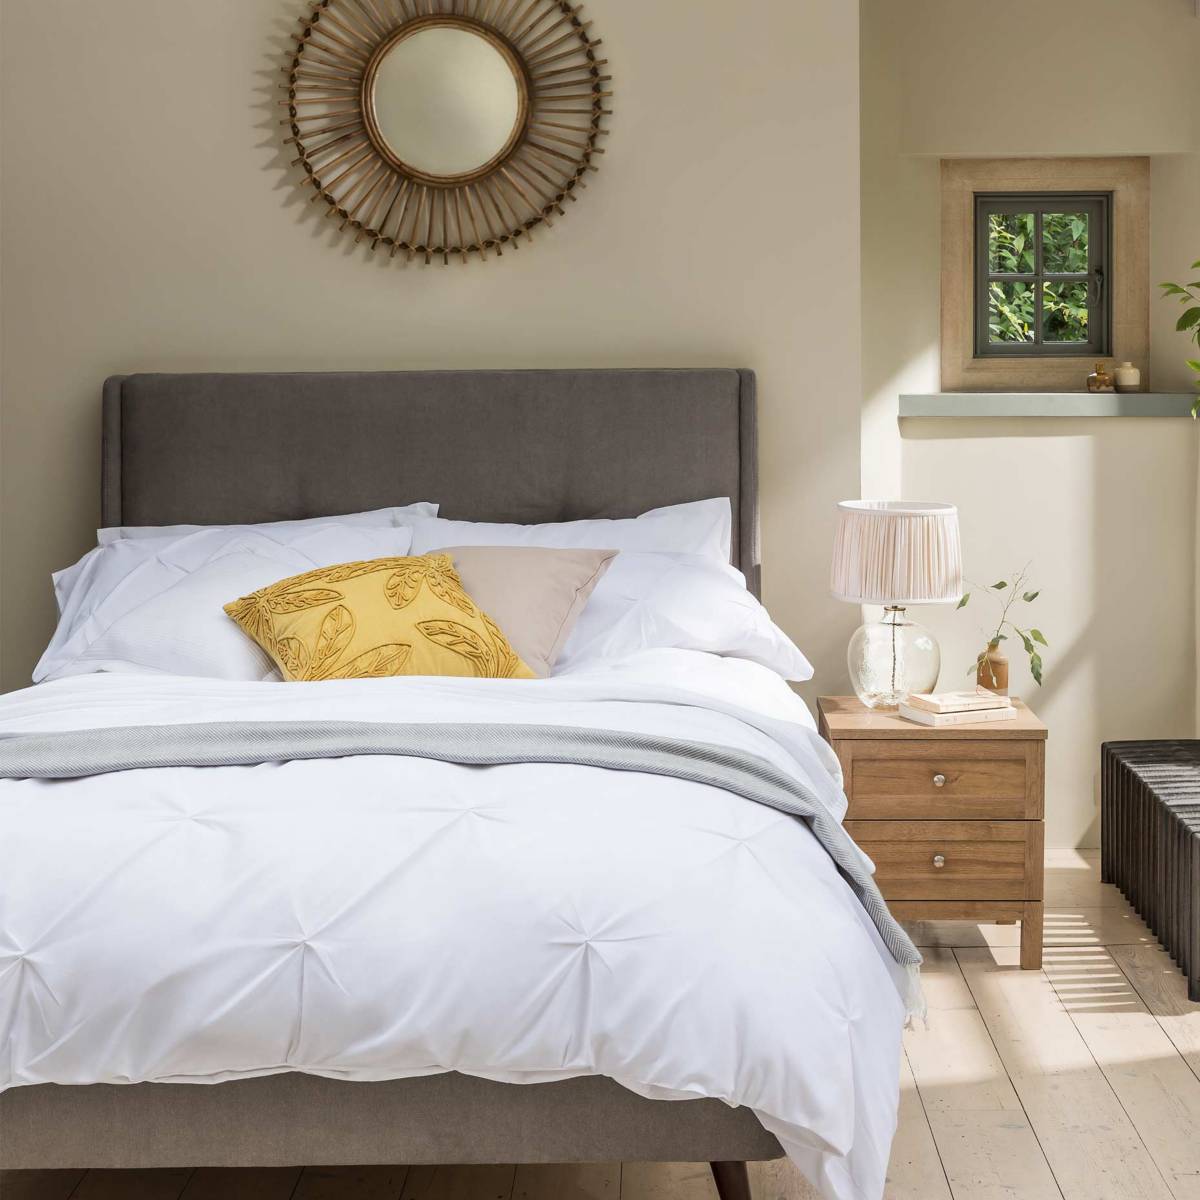 Dormitorio moderno con cama de matrimonio con ropa de cama blanca lisa. Ver toda la ropa de cama